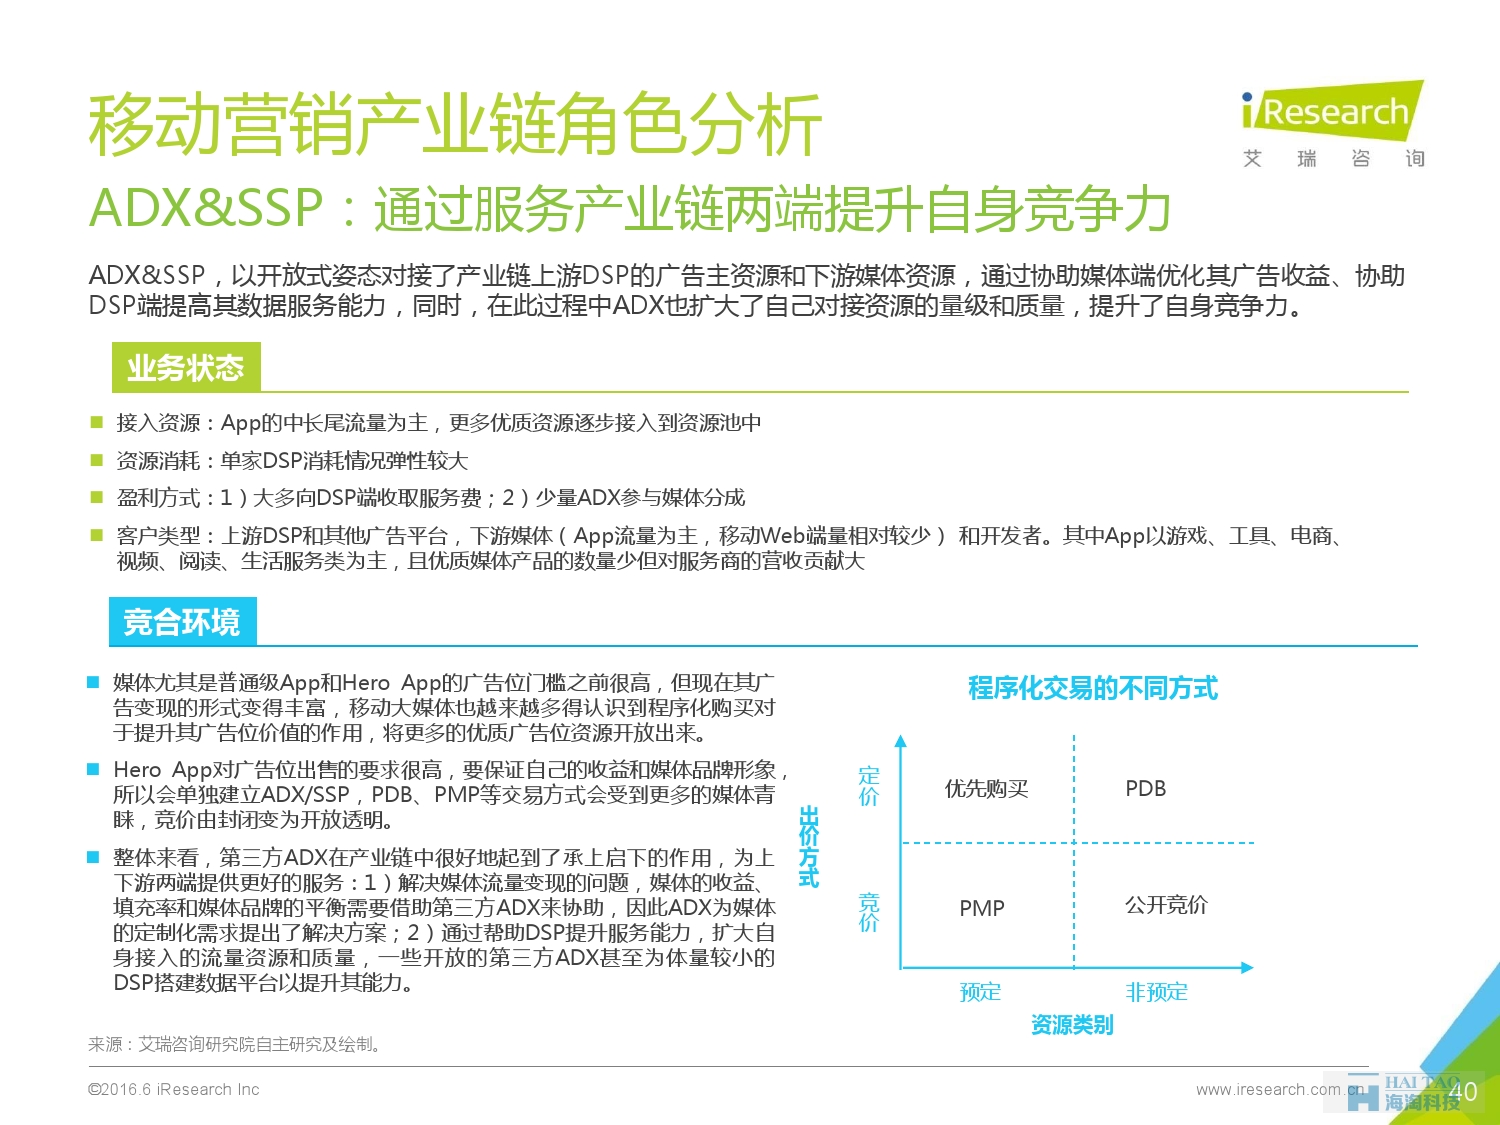 2016年中国移动营销行业研究报告——程序化时代篇_000040